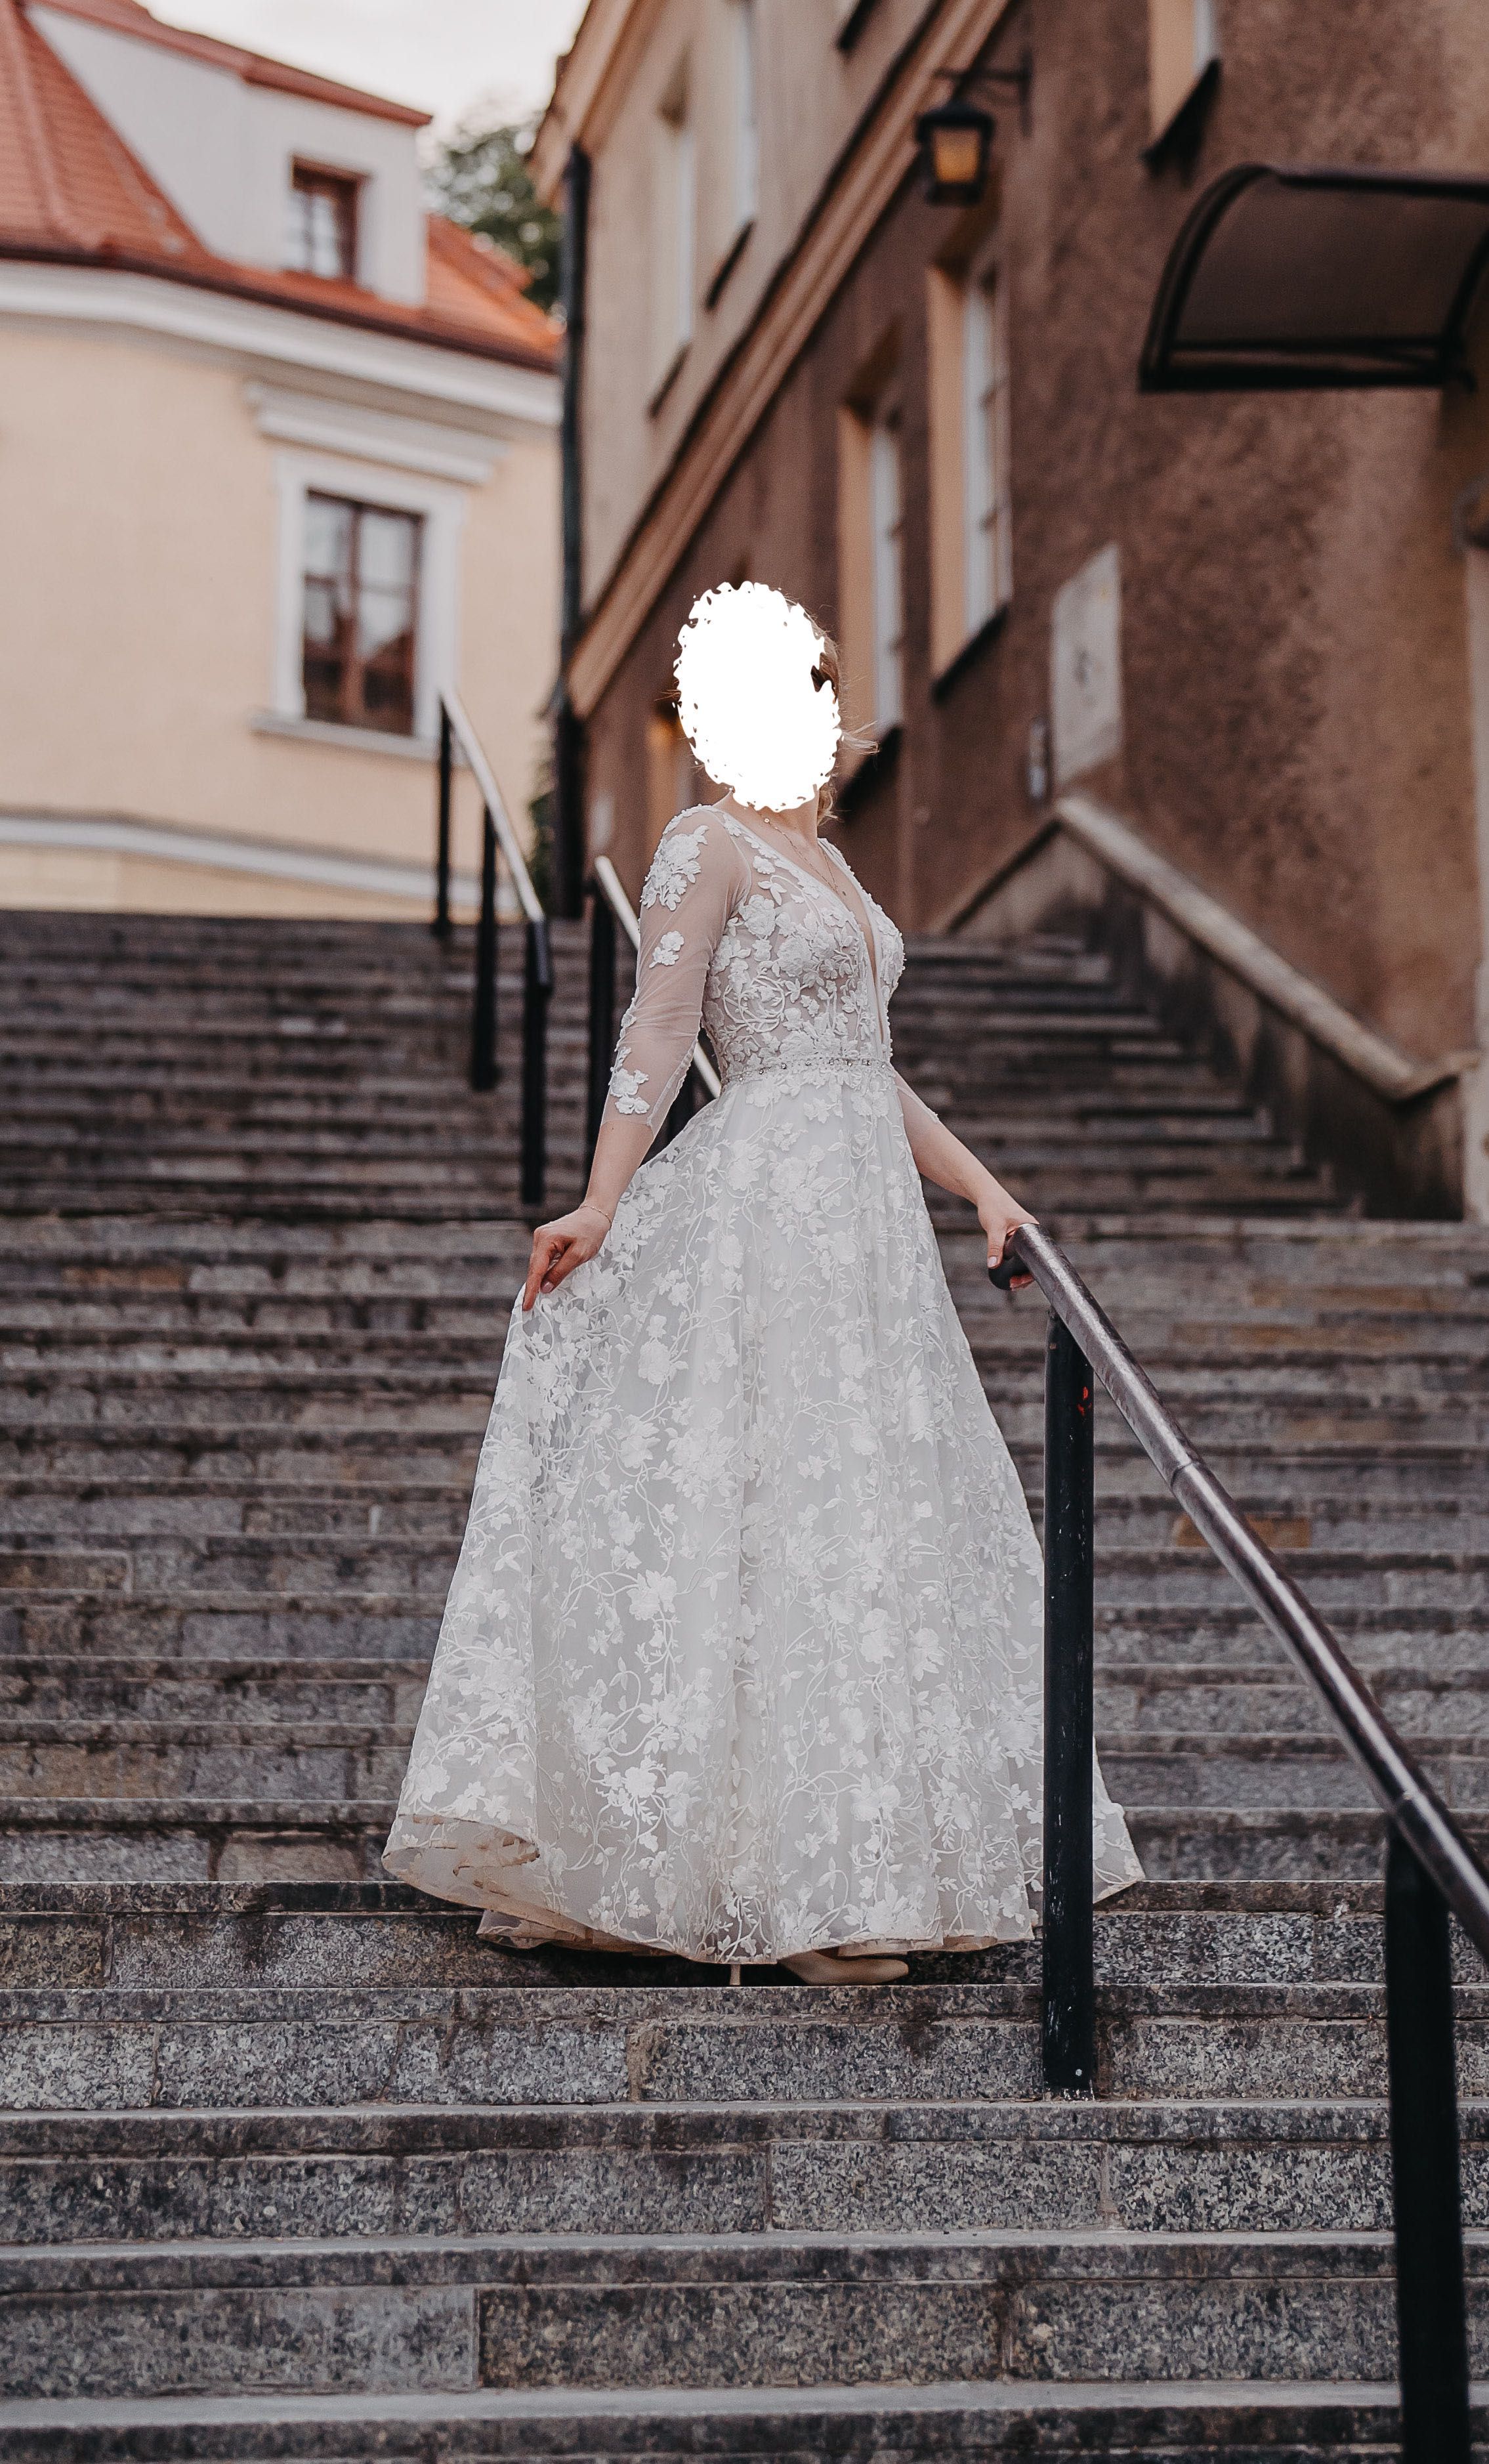 Suknia ślubna w literę A, wzrost 175 cm, koronkowa, biała, wyprana